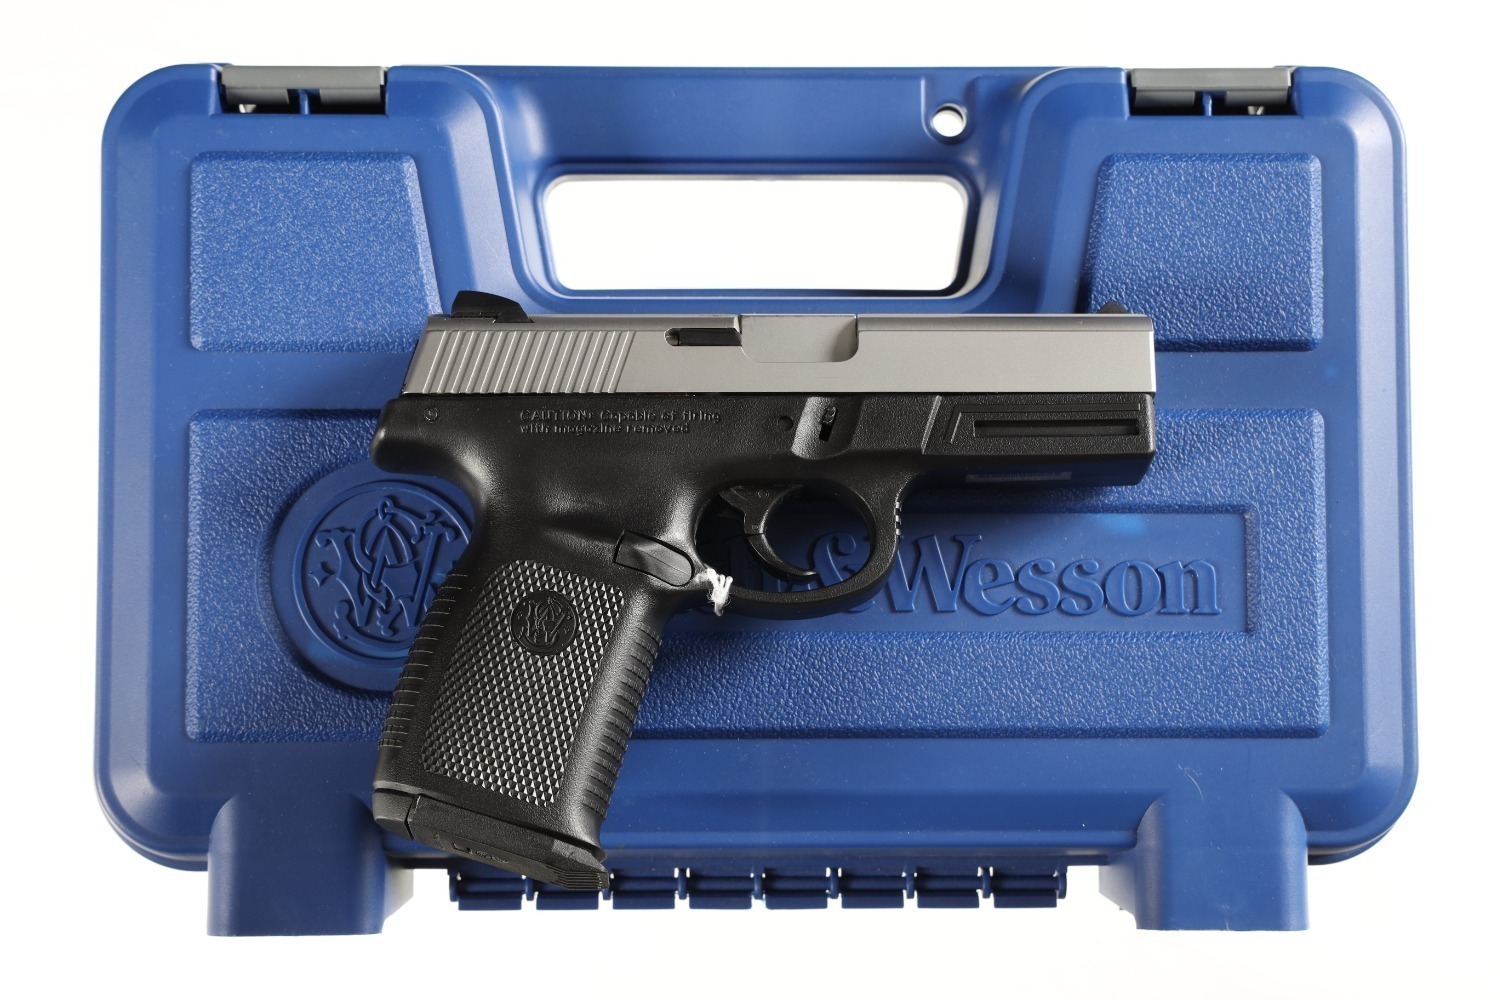 Smith & Wesson SW40VE Pistol .40 s&w